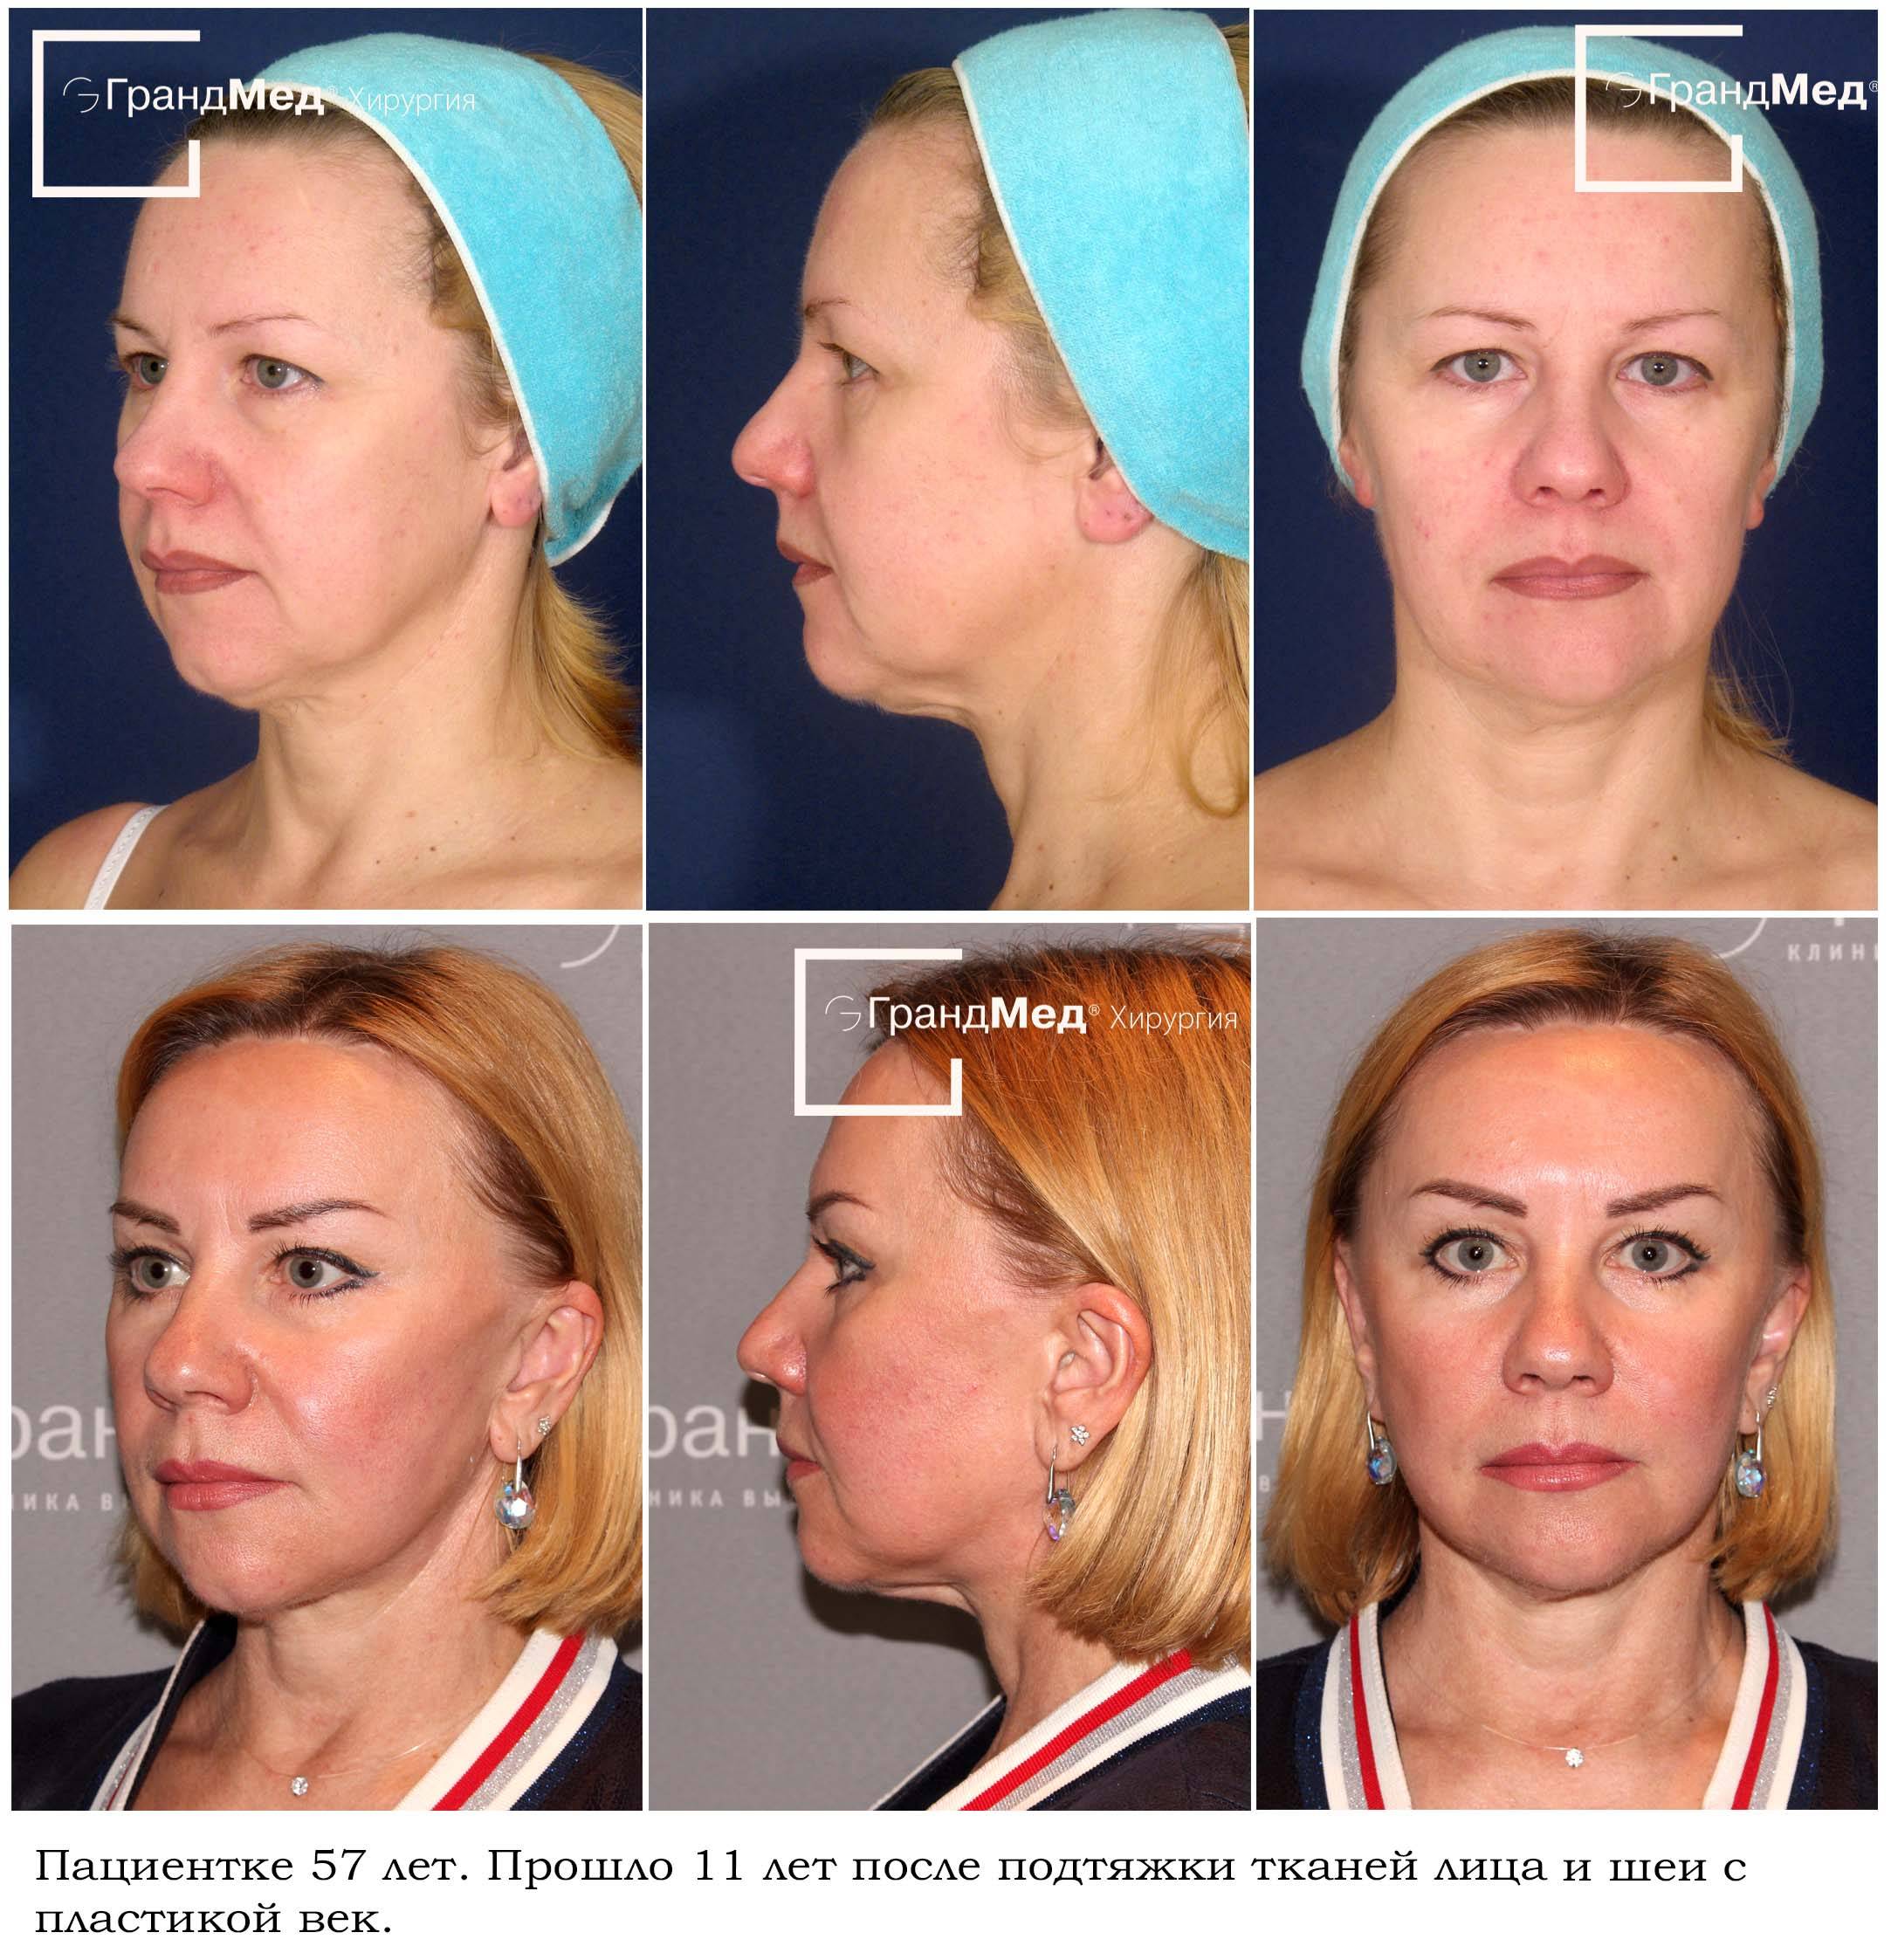 Хирургическая подтяжка лица (фейслифтинг), сколько стоит сделать контурную подтяжку лица и шеи в клинике спб